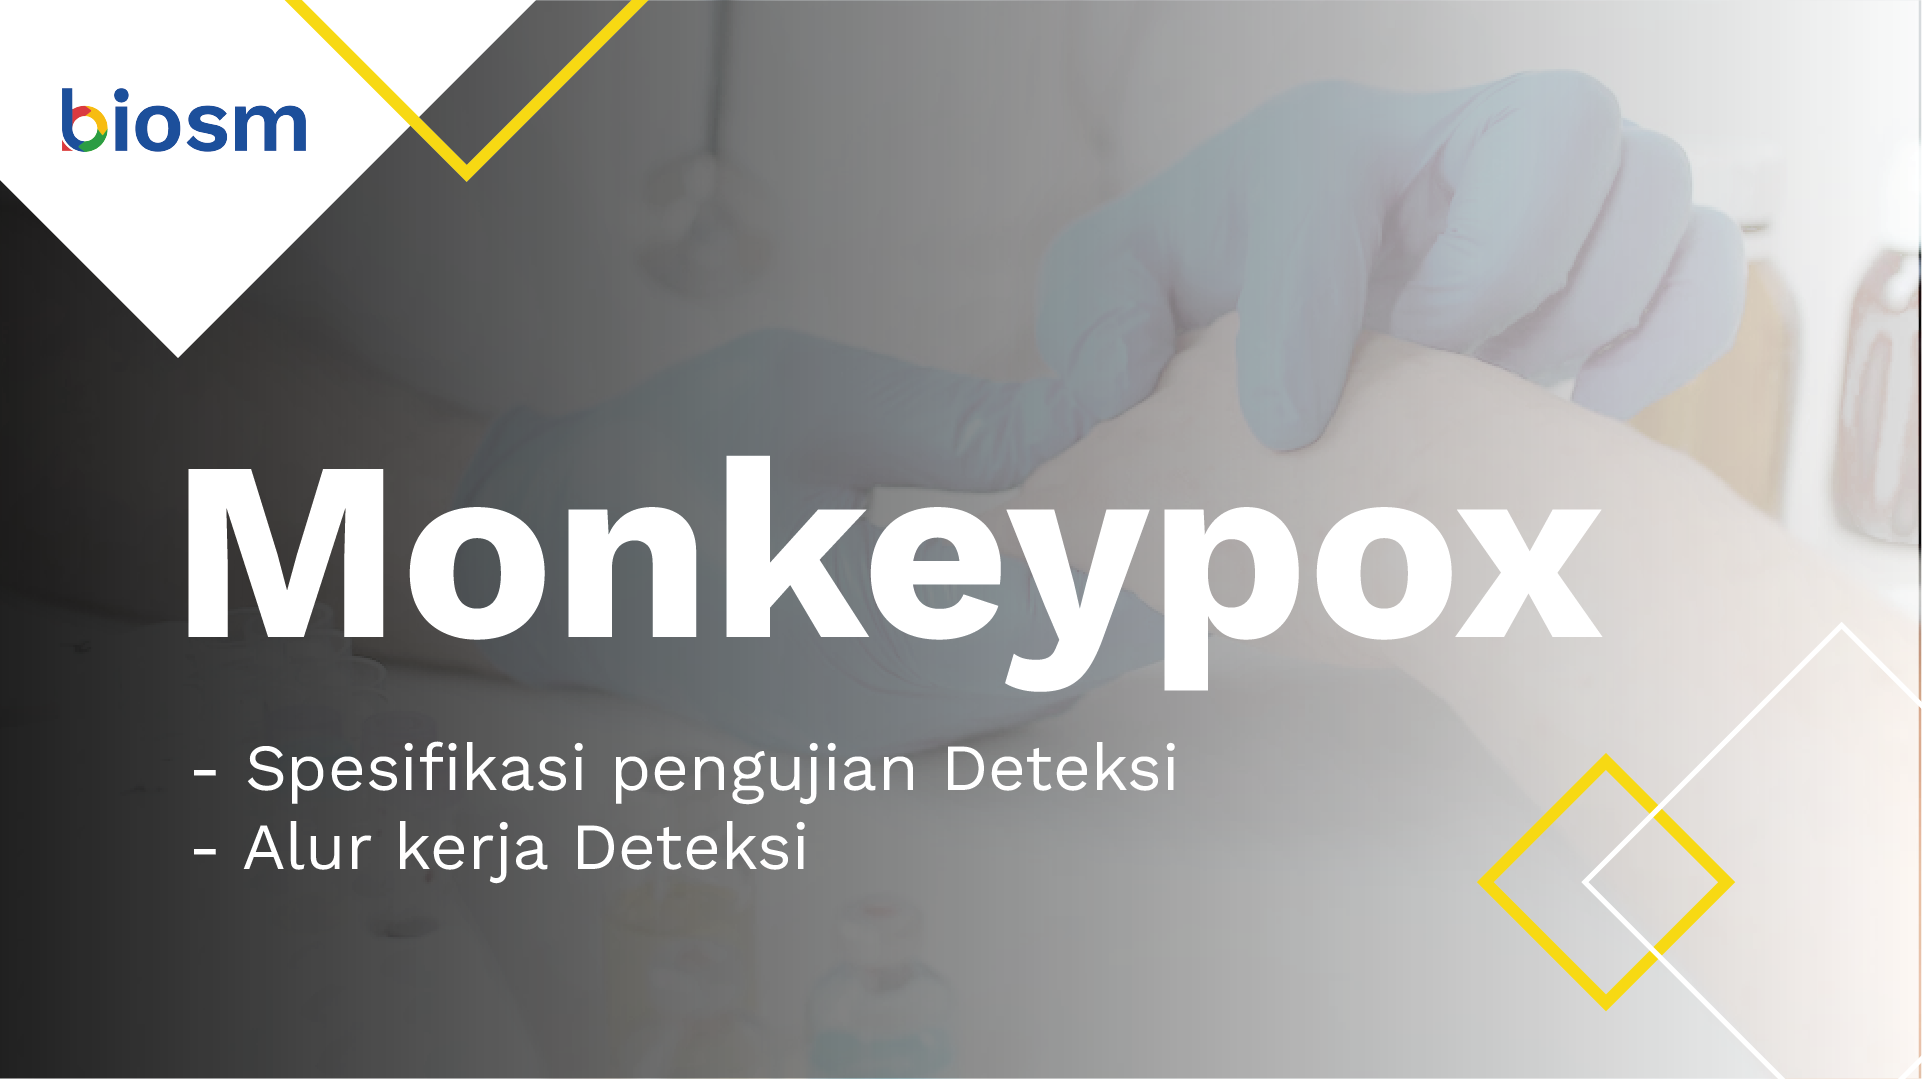 Bagaimana Deteksi Monkeypox Di Indonesia?